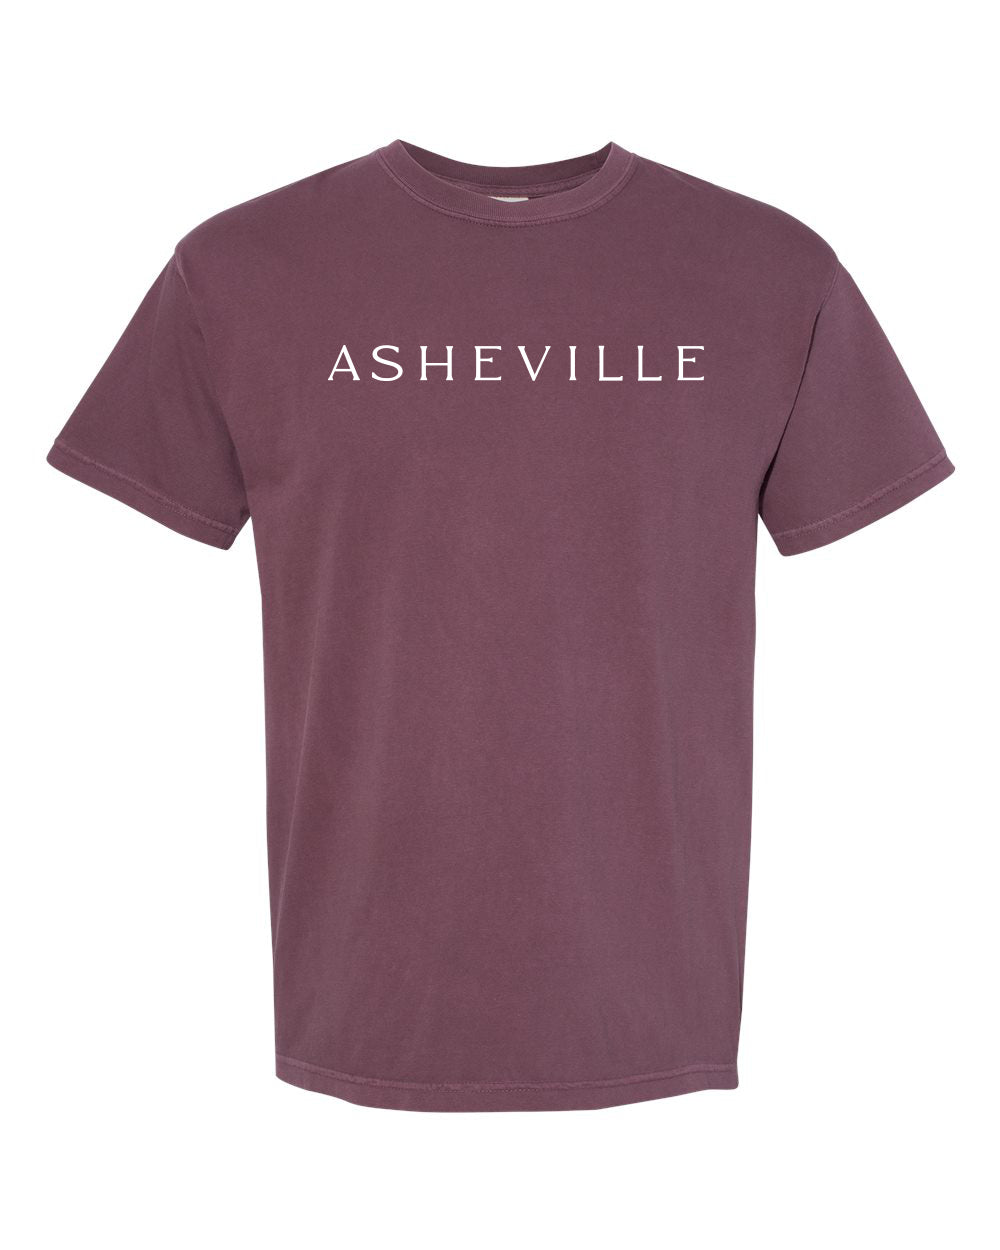 AVL Adventure  T-Shirt Vineyard - The ASHEVILLE Co. TM